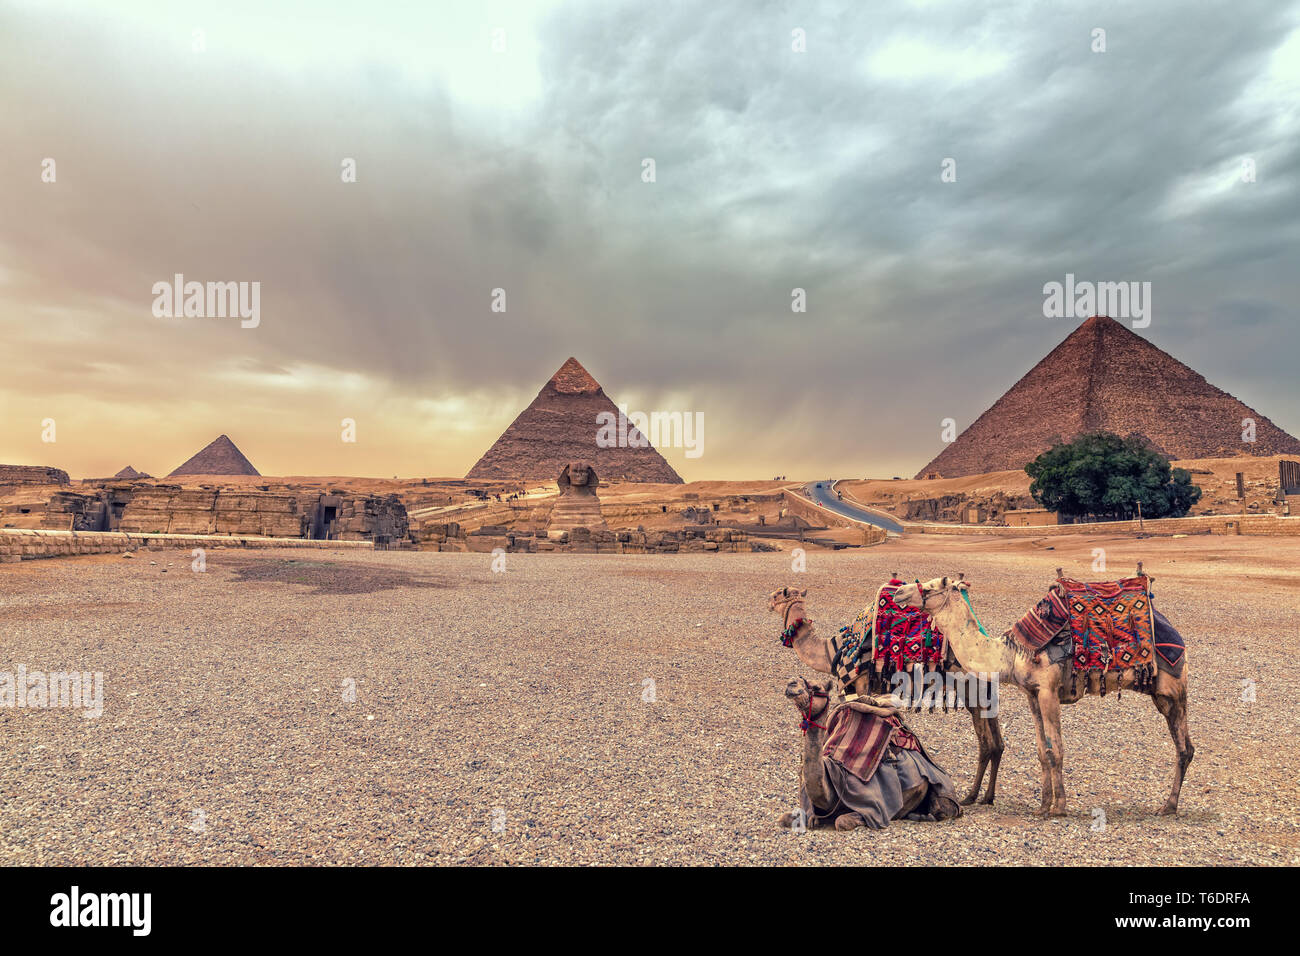 El complejo de las pirámides de Giza y La Esfinge en el desierto con camellos, Egipto. Foto de stock